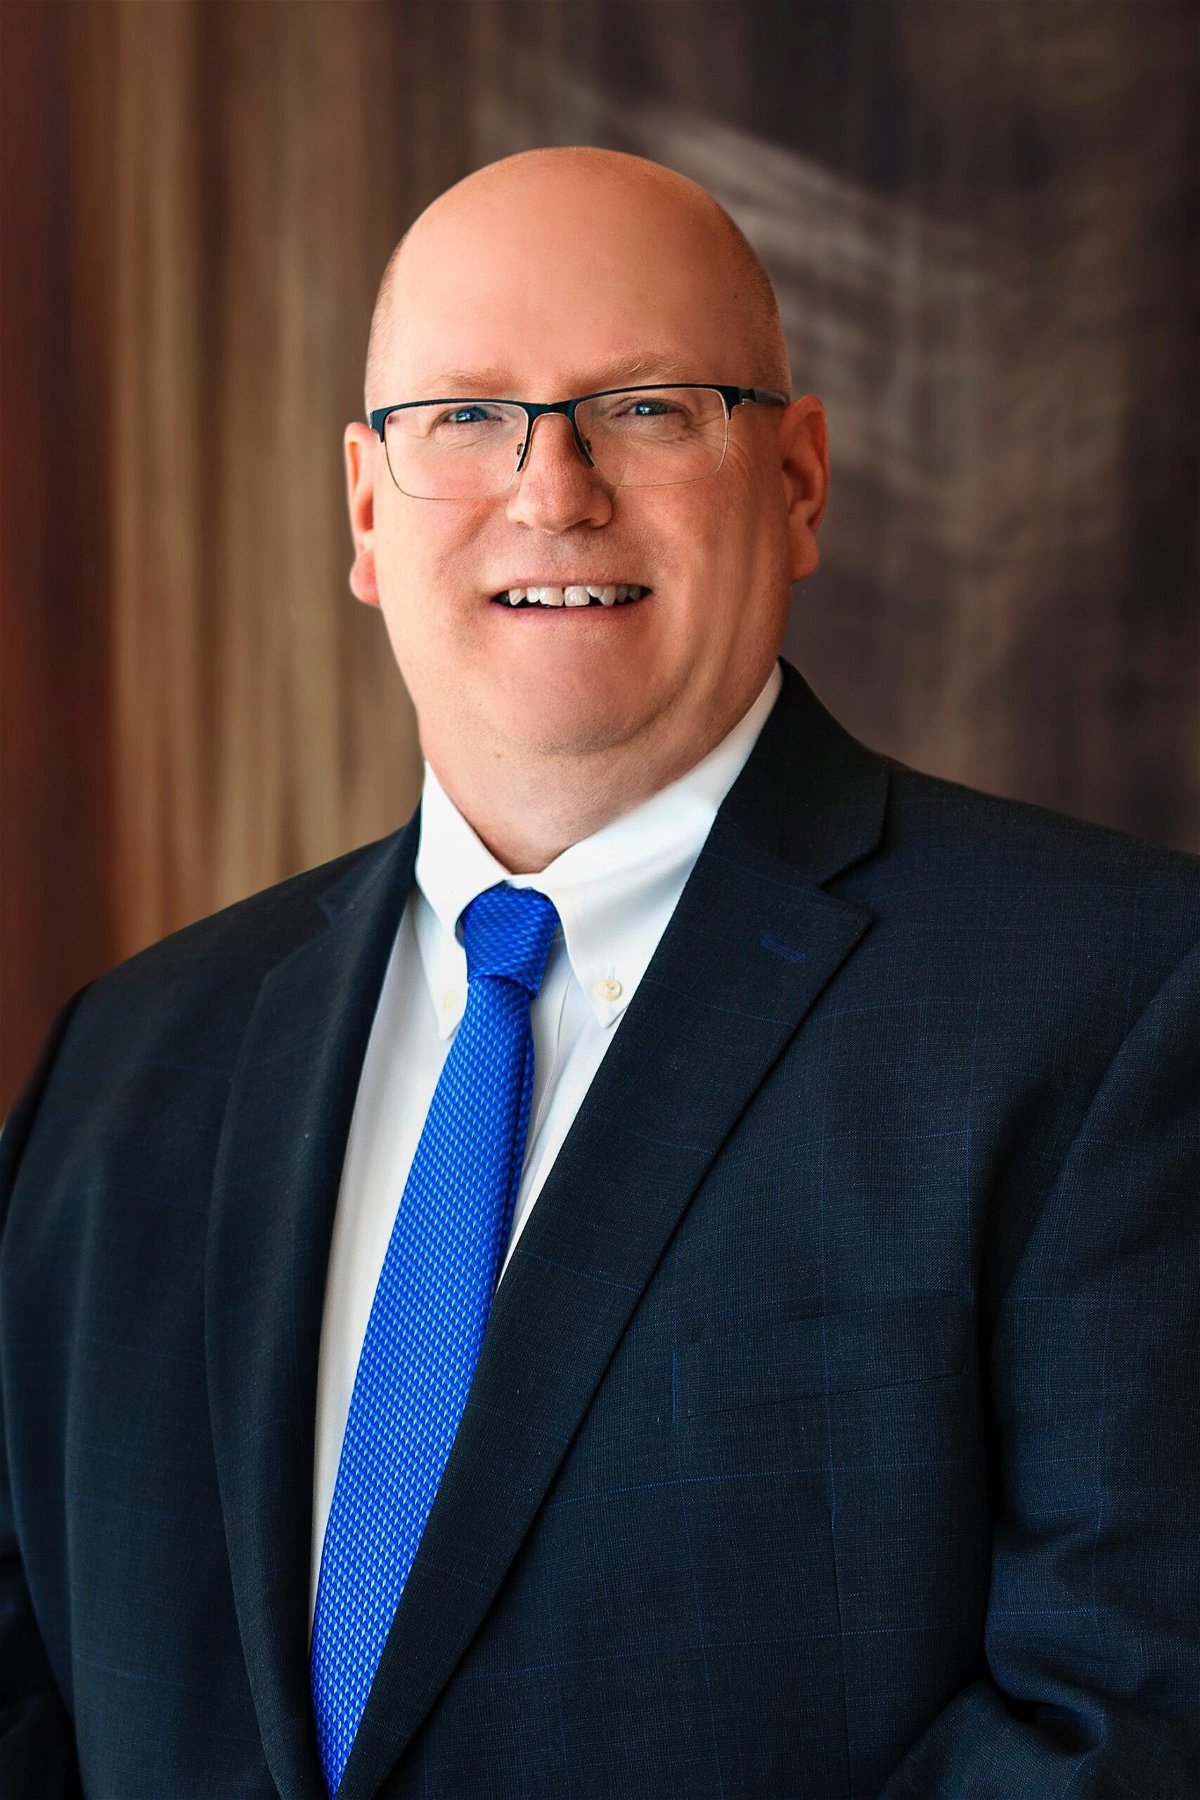 Kenneth (K.C.) DeBoer named Mid-Missouri Regional President for SSM Health.
